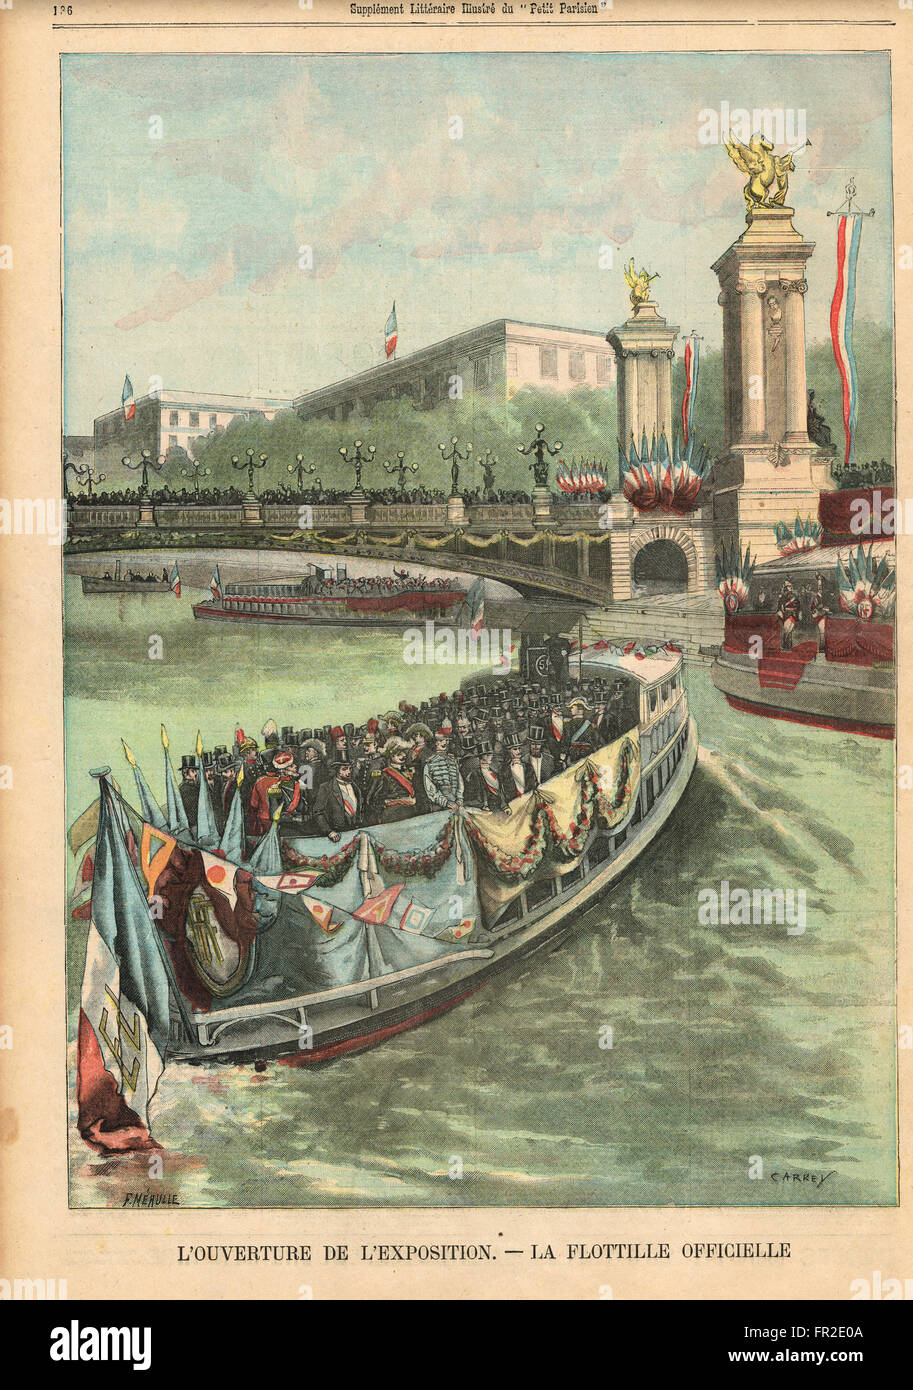 Flottille des officiels à l'ouverture de l'exposition de Paris 1900. Illustration du petit parisien dans le journal français illustré Banque D'Images